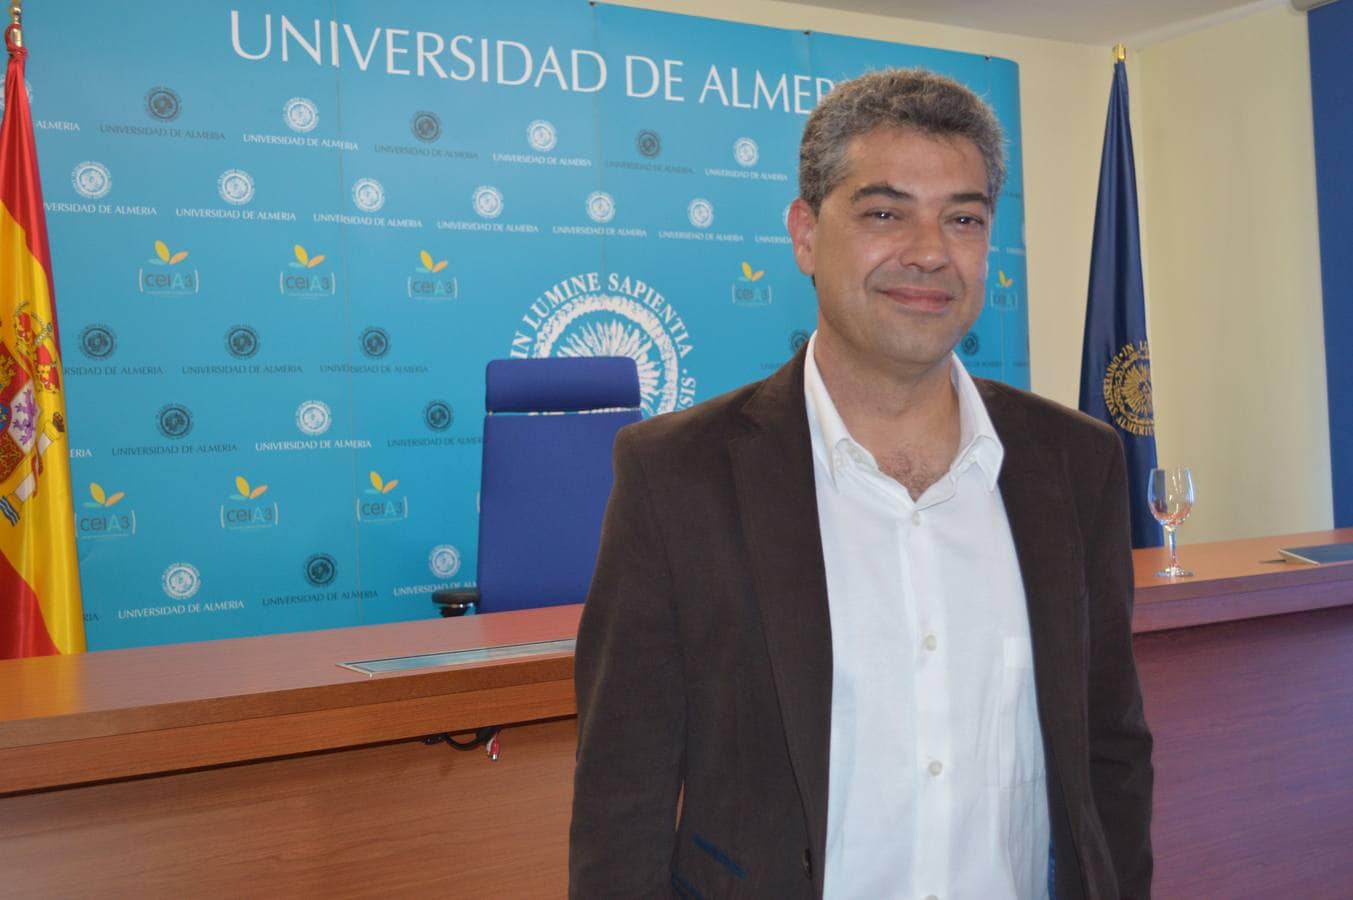 Universidad de Almería: Este año se cumplen 25 años desde su creación y desde entonces ha formado a más de 70.000 graduados en su historia. 